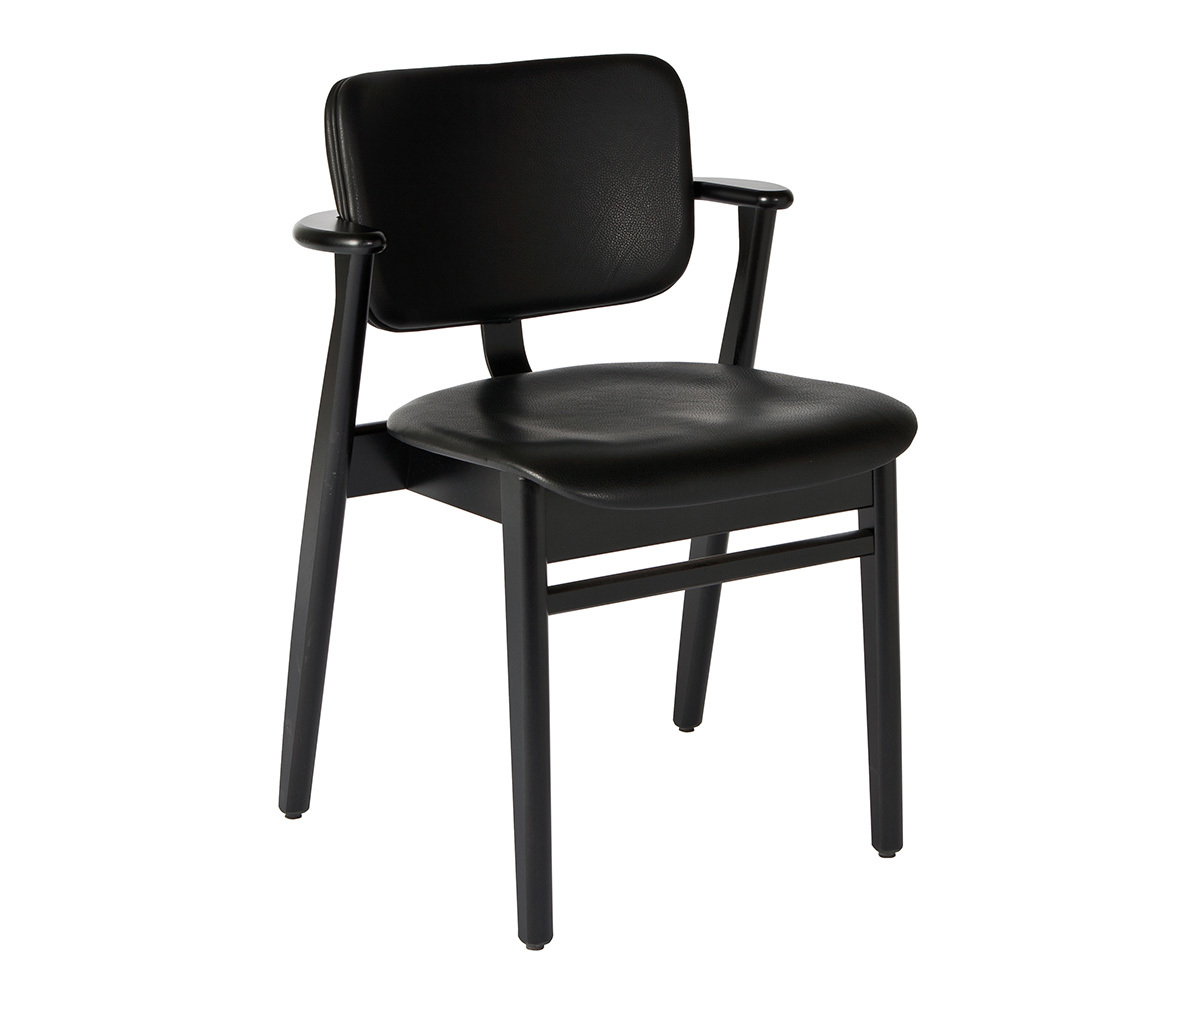 Domus Chair